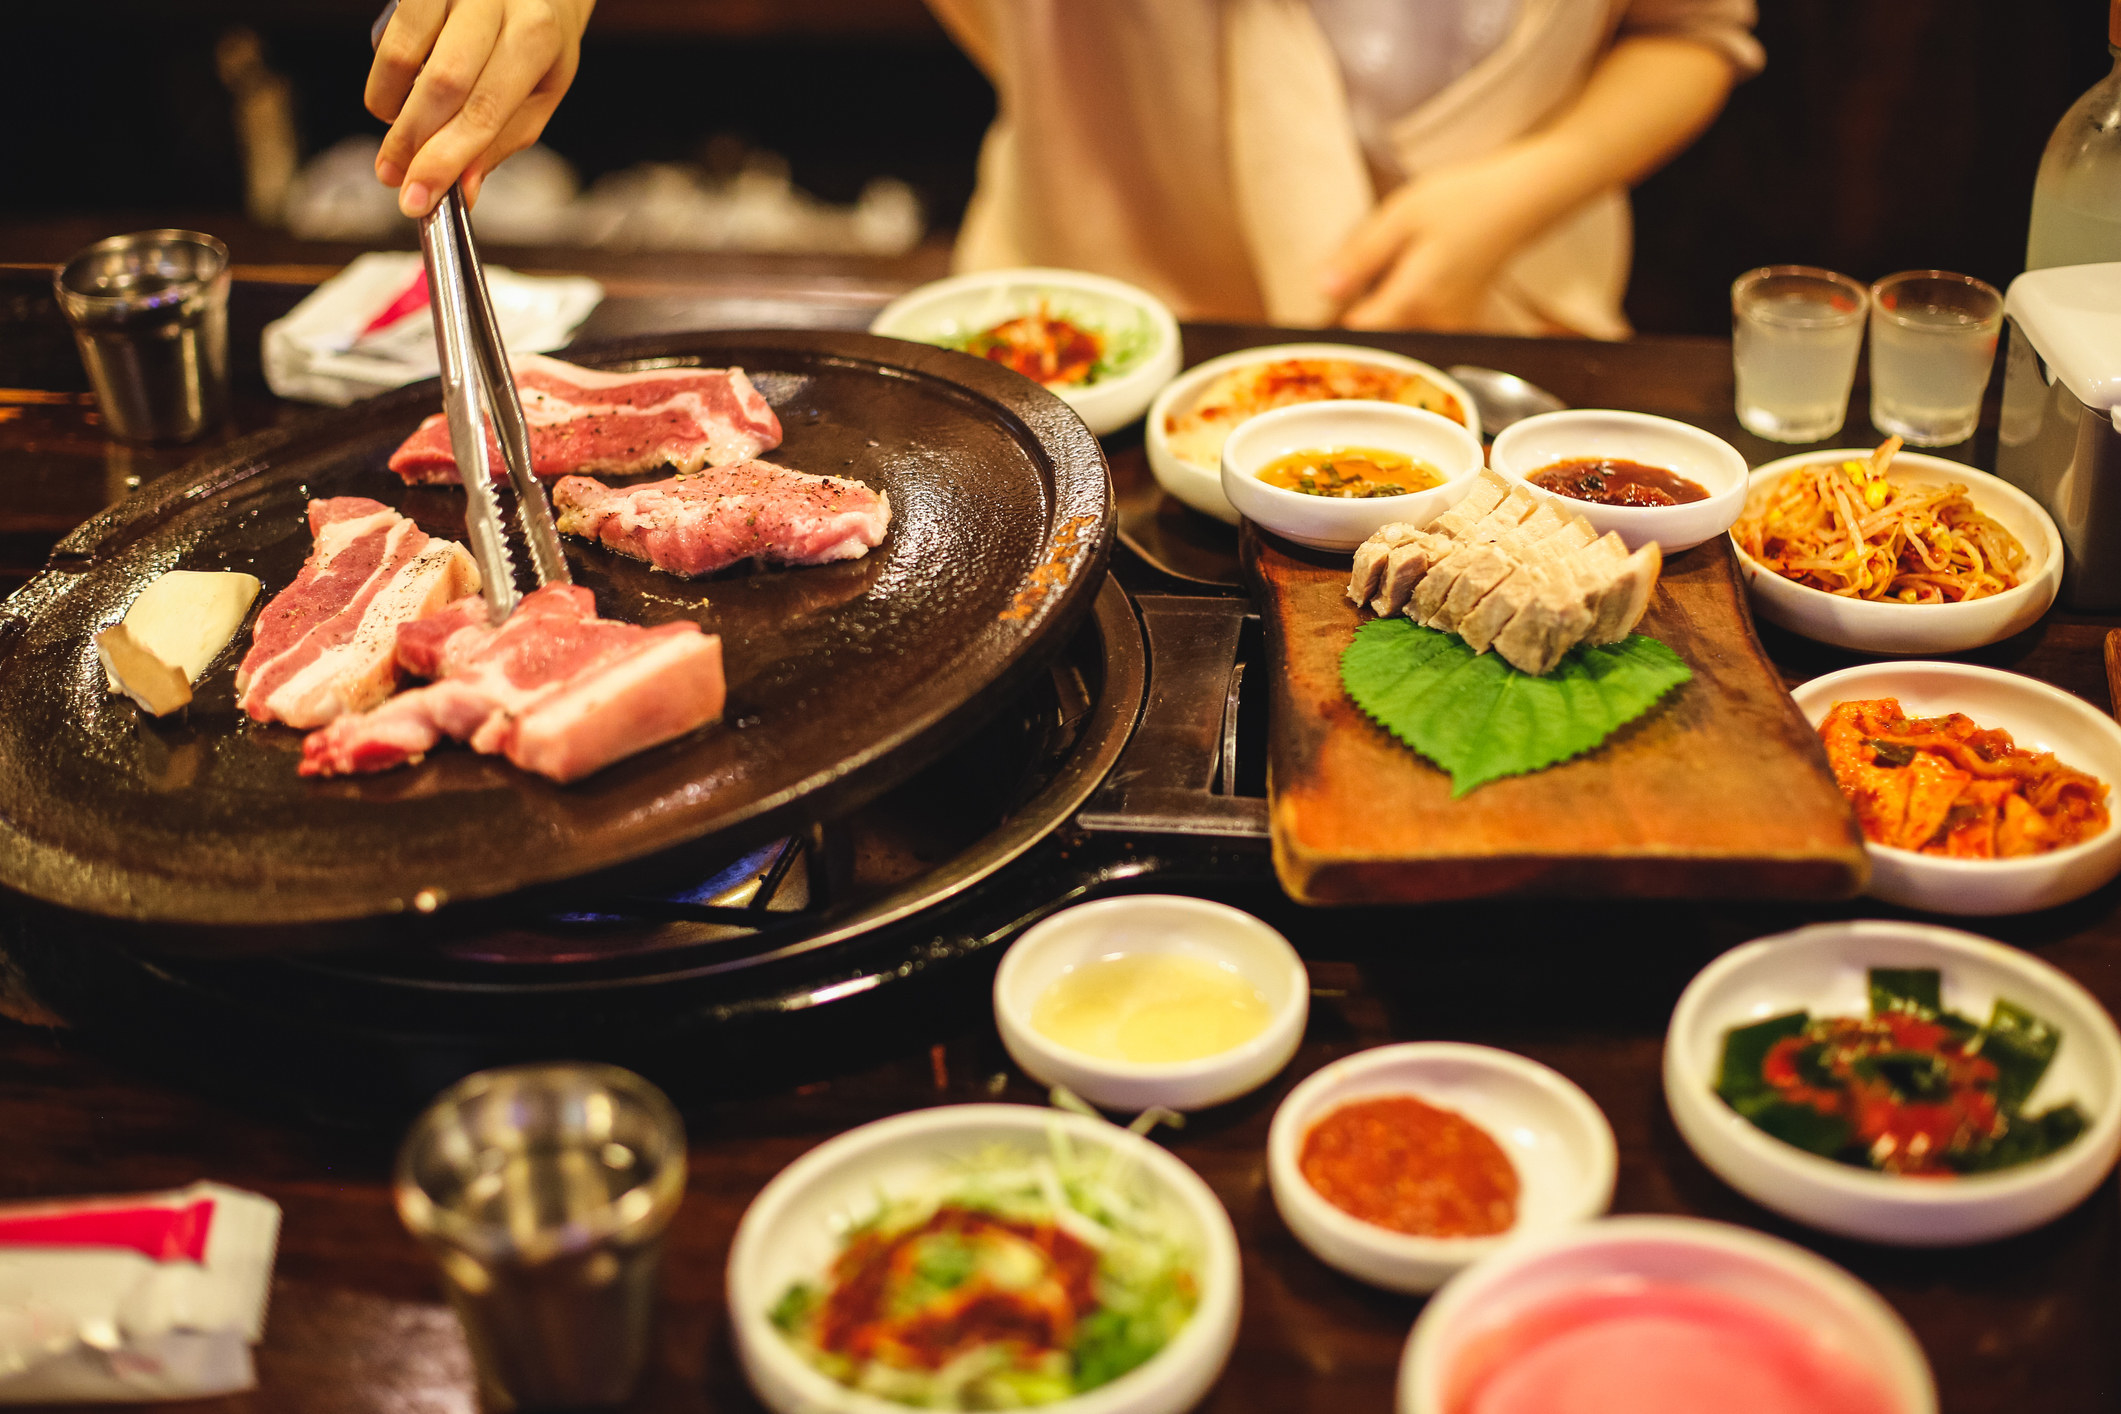 A Korean BBQ meal.